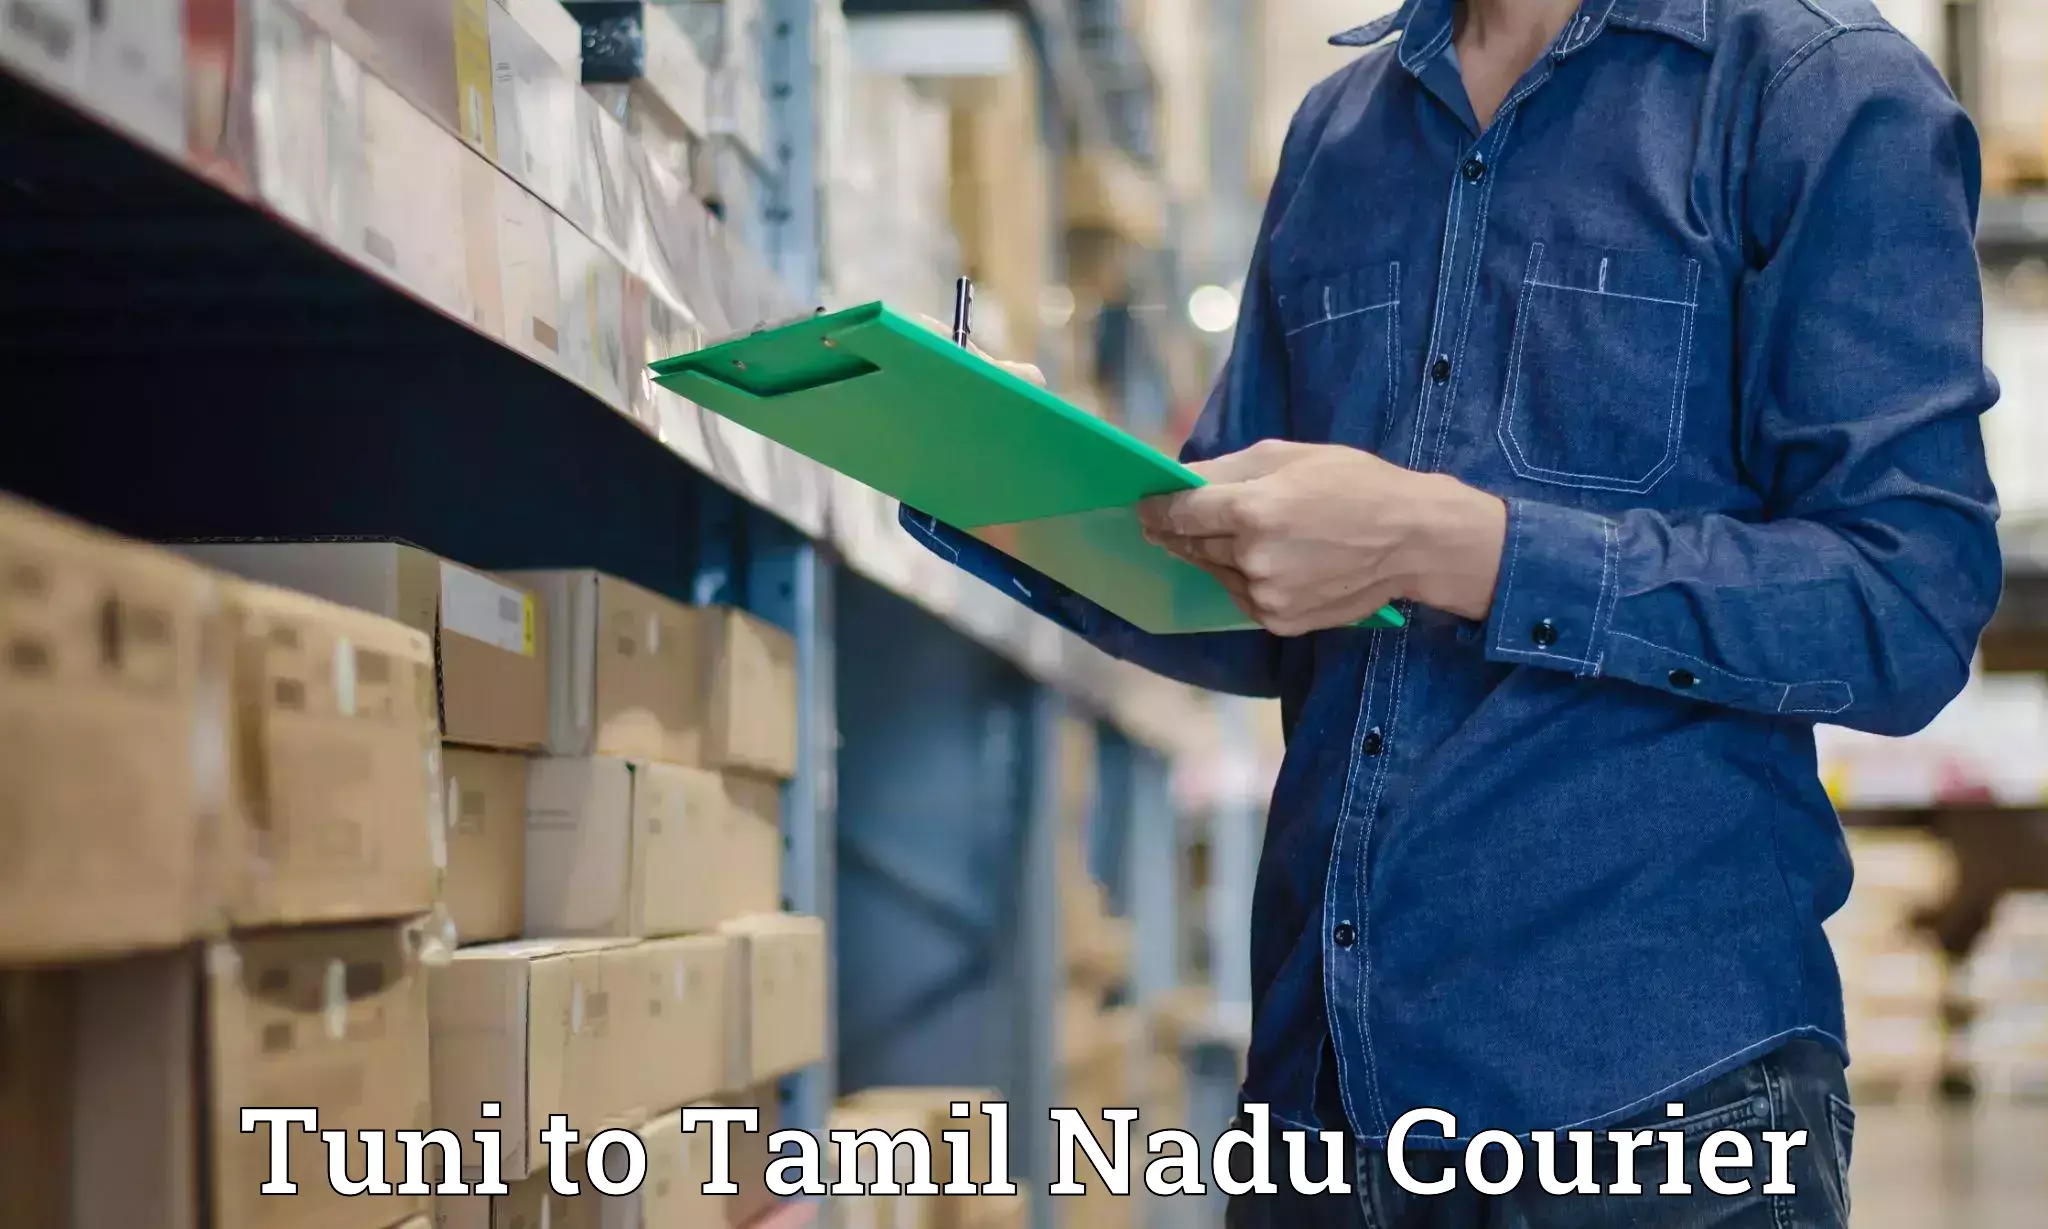 Baggage transport professionals Tuni to Tamil Nadu